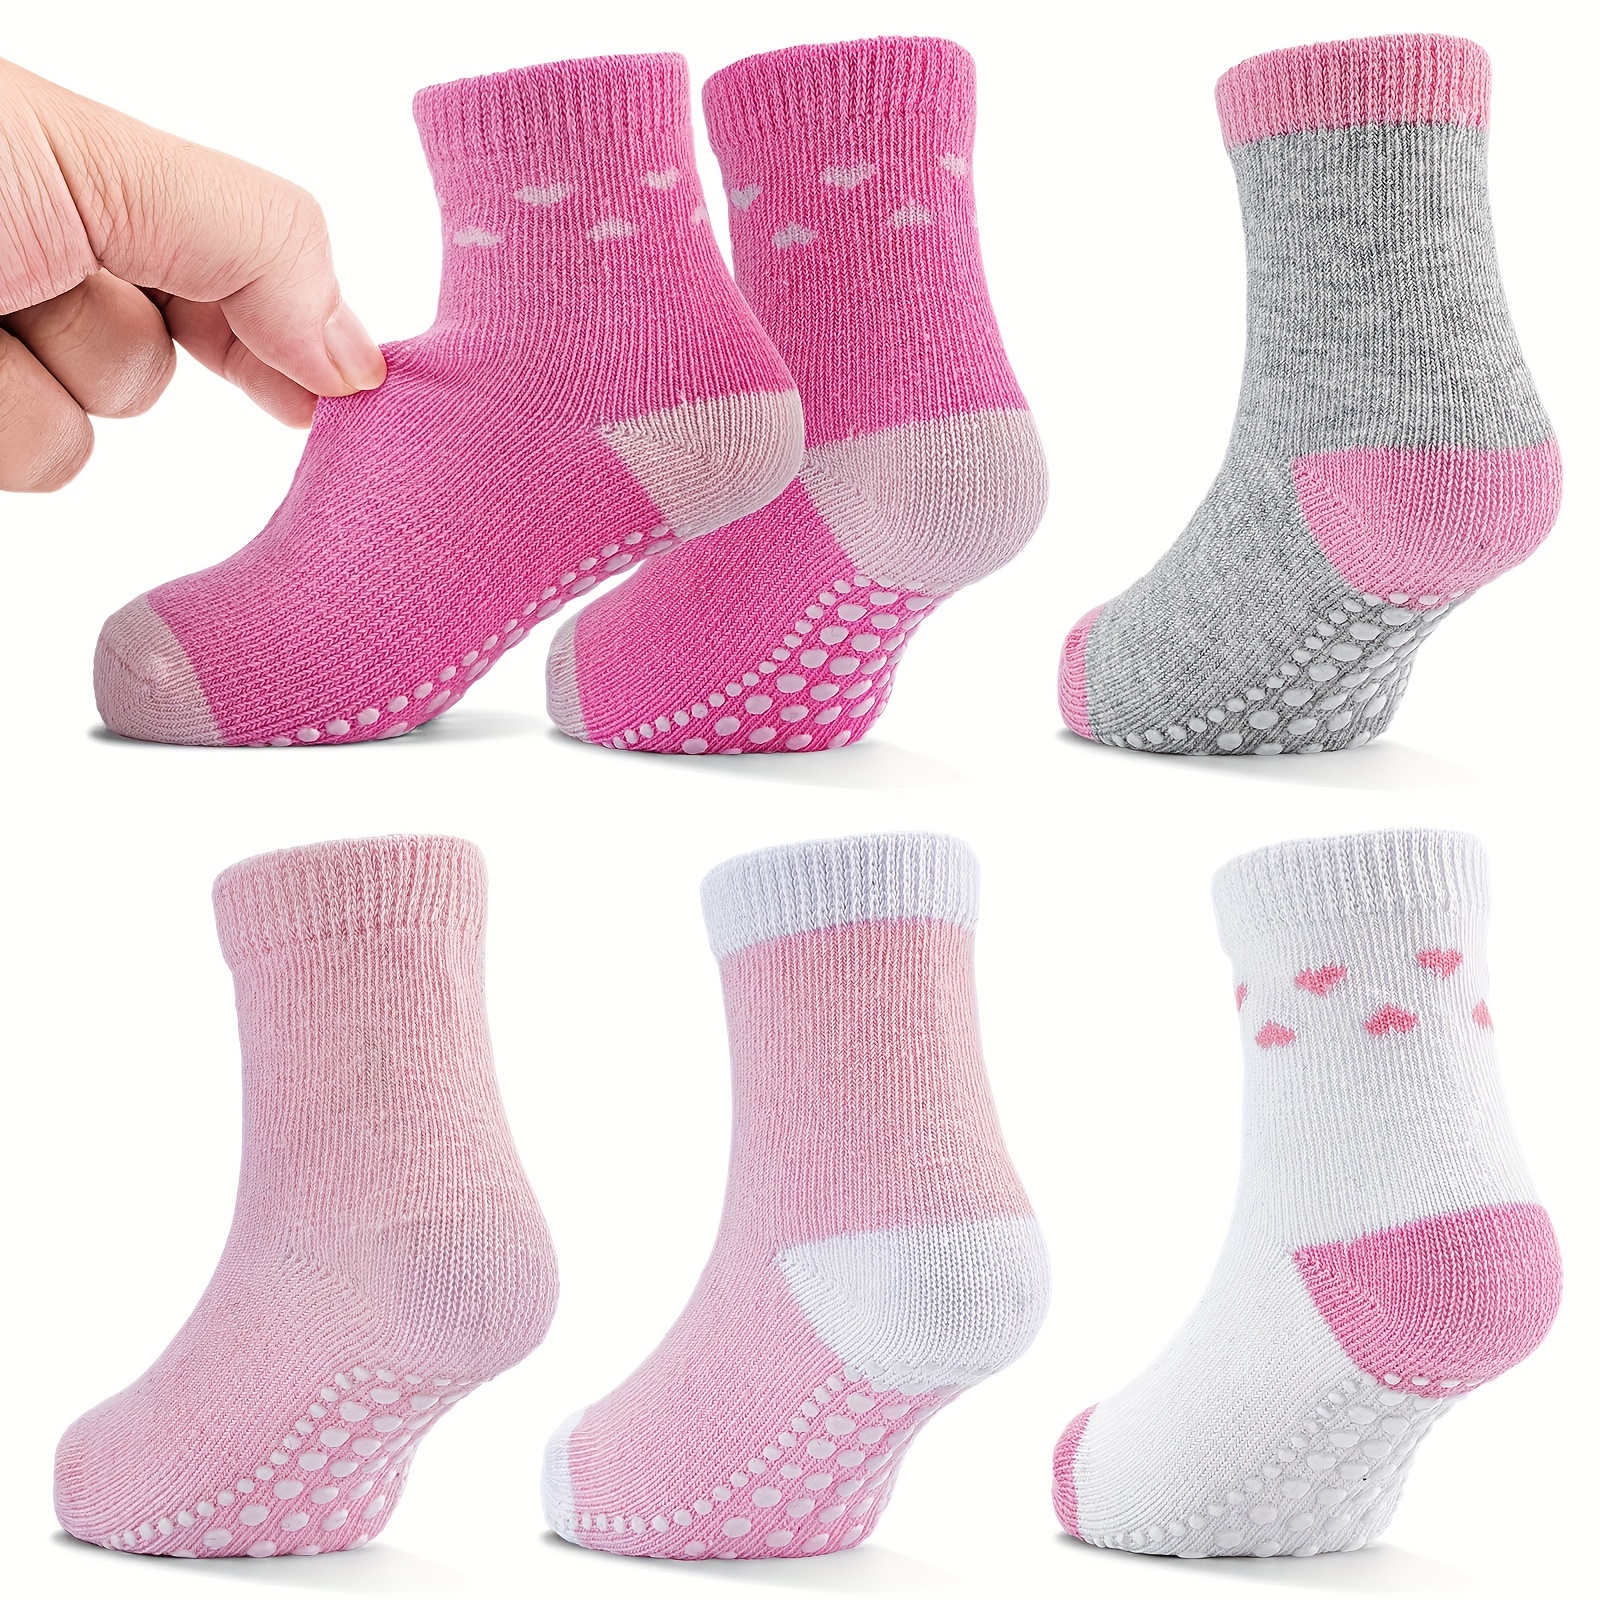 Chaussettes antidérapantes en coton doux pour bébé, chaussettes